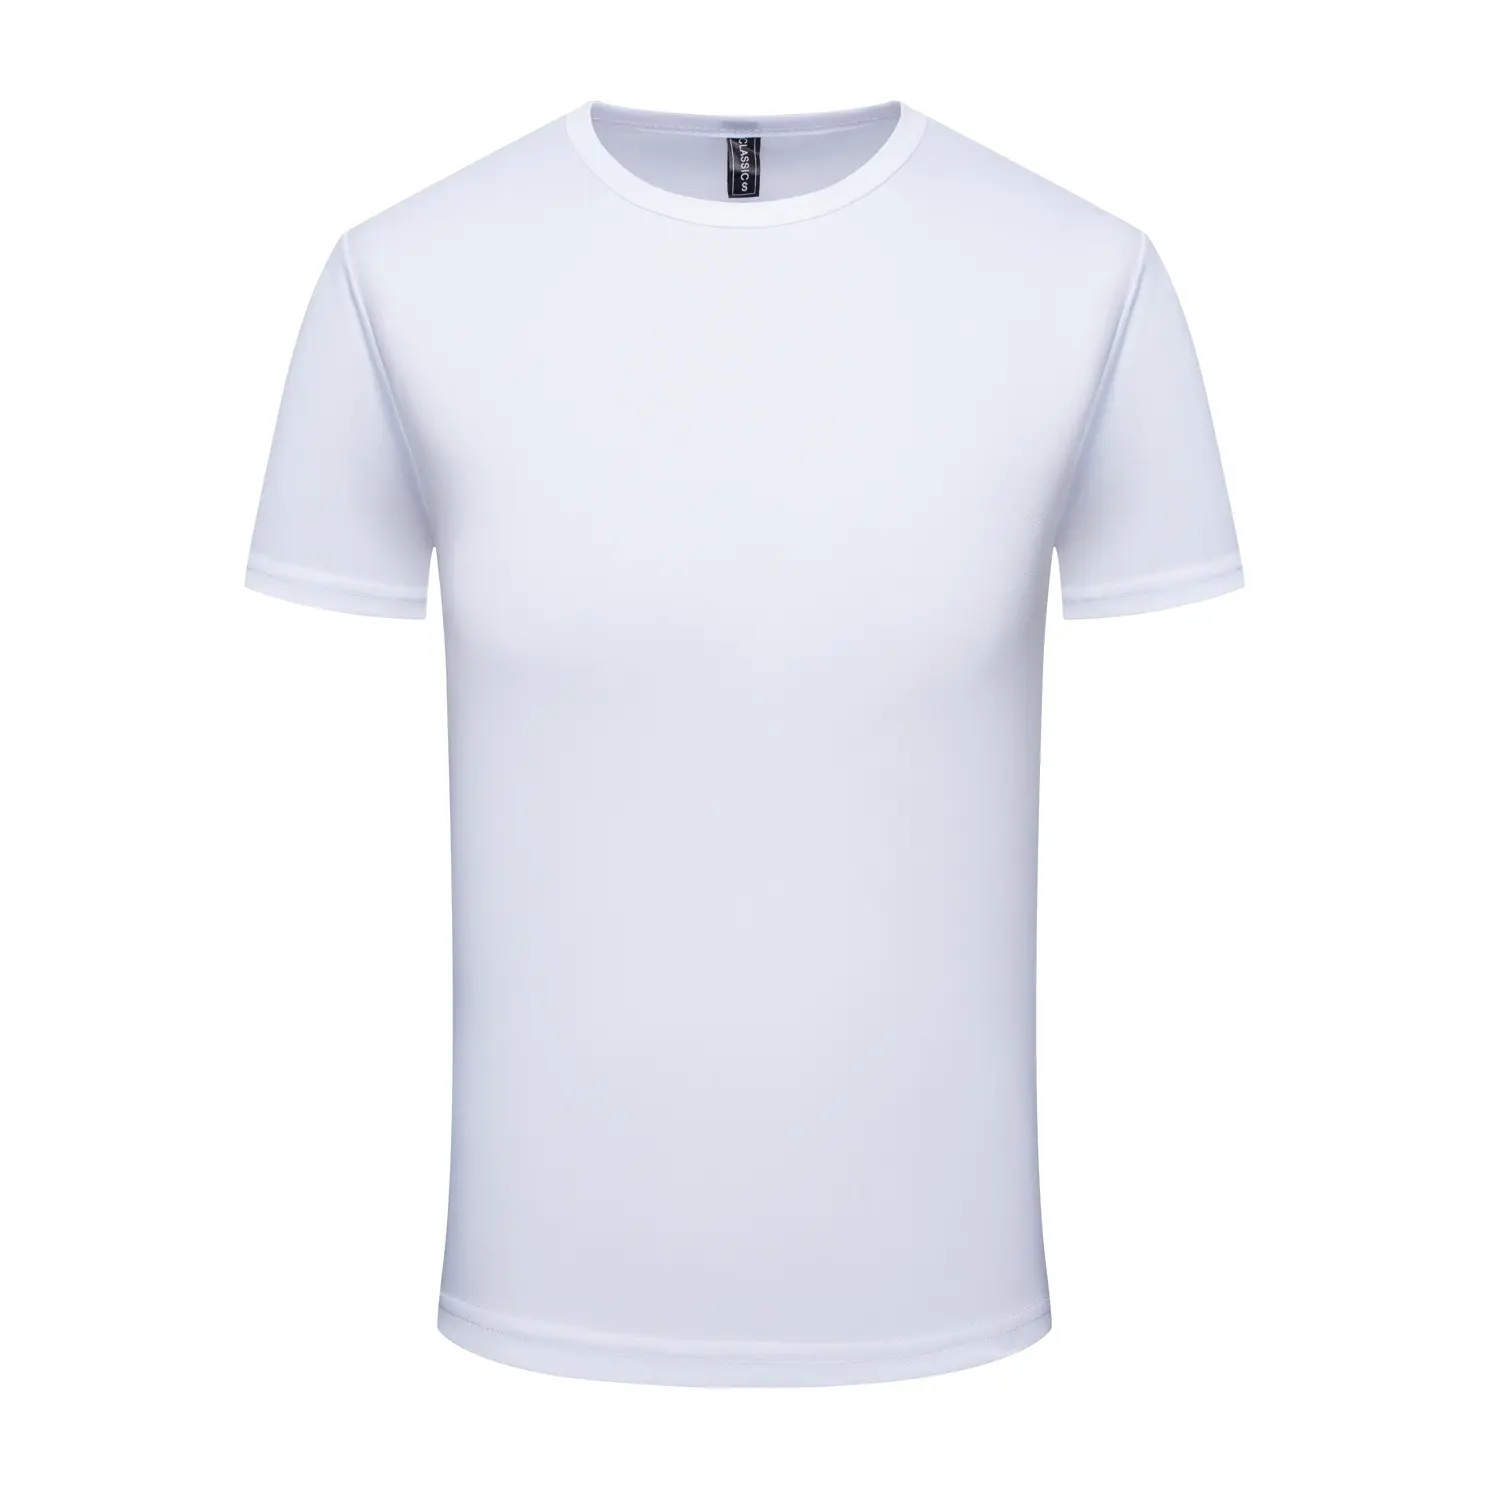 Promosyon t-shirt özel 100 Polyester süblimasyon T Shirt boş koşu Tee gömlek üreticisi düz beyaz tişört erkekler için